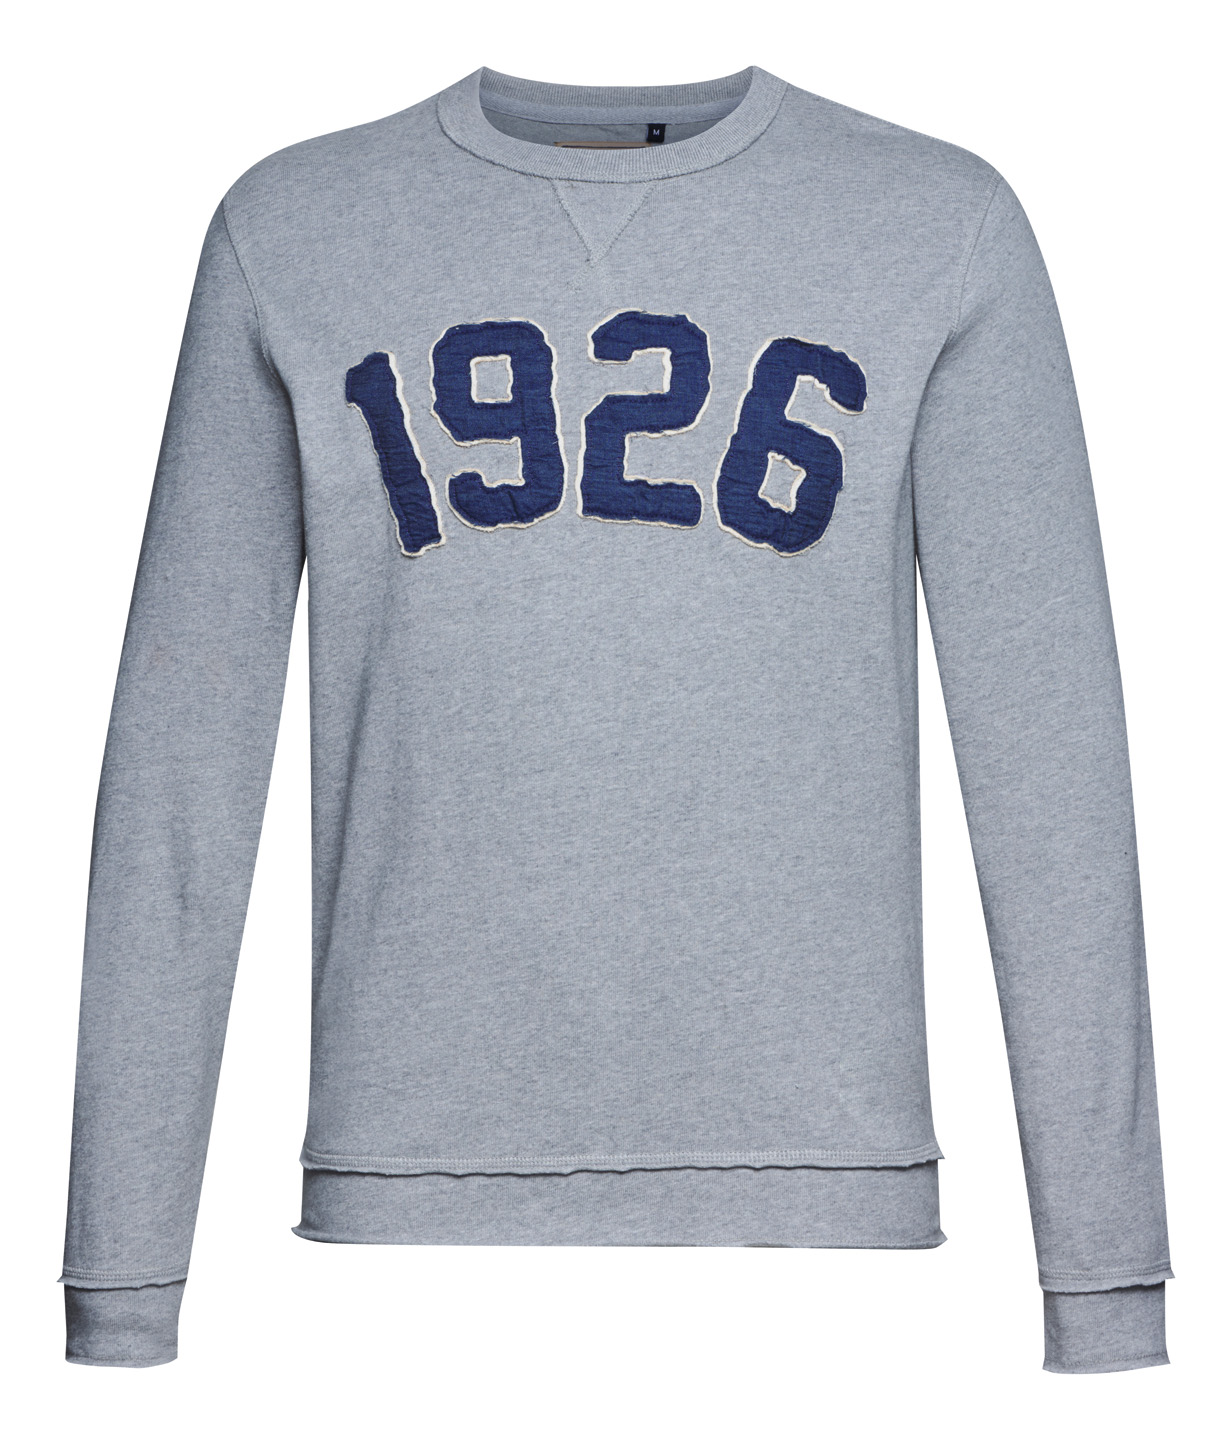 Sweatshirt 1926